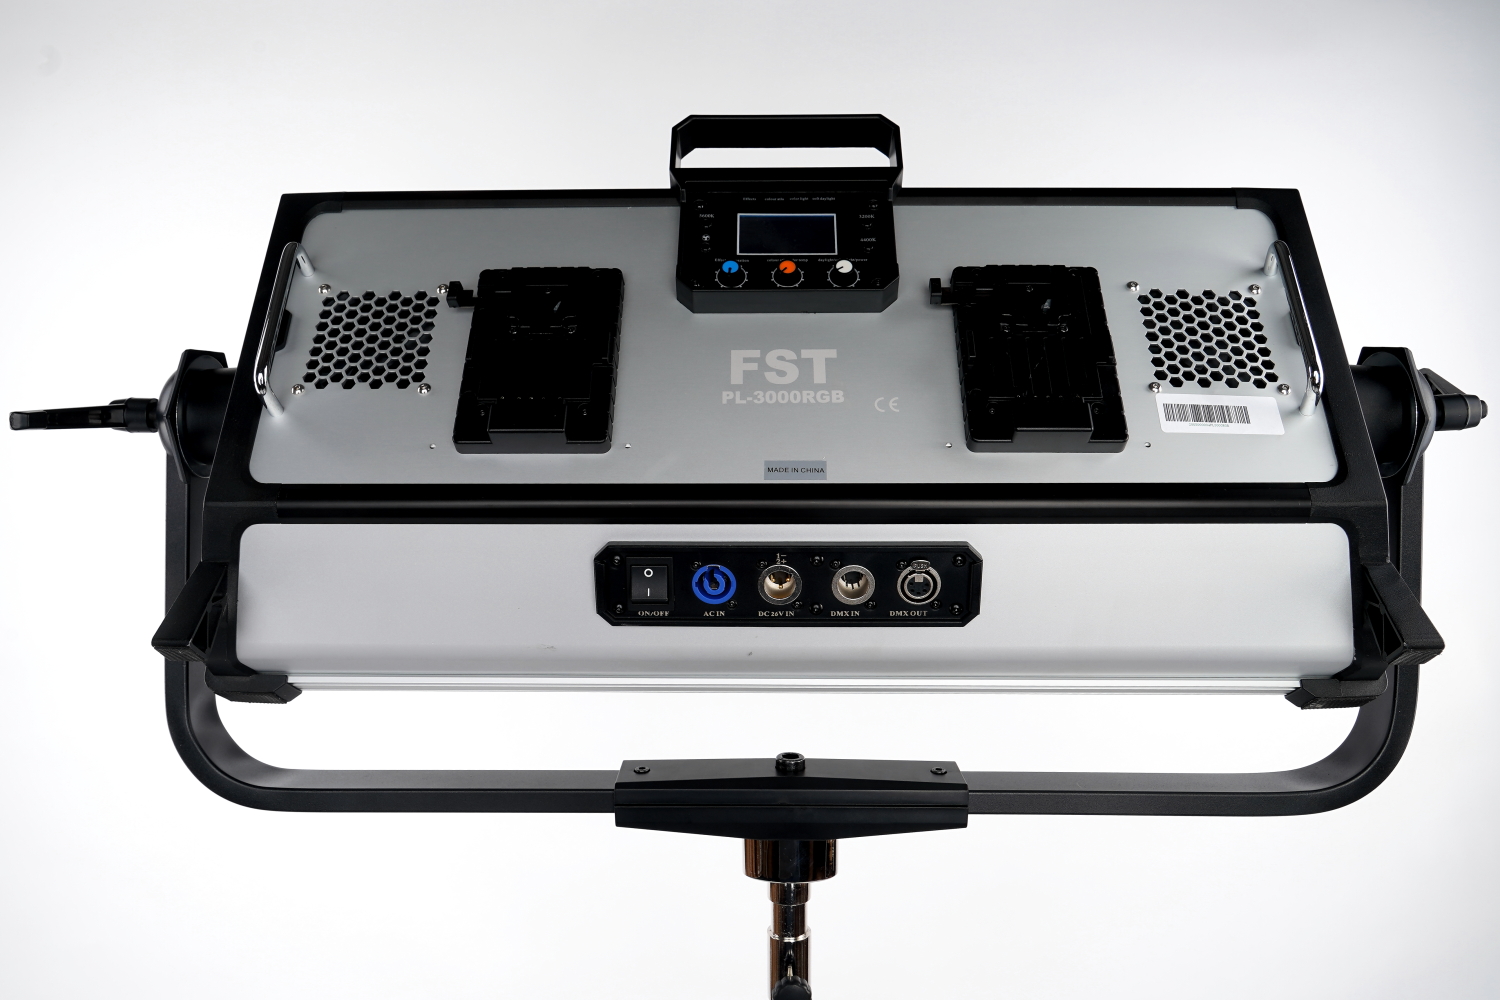   FST PL-3000RGB 